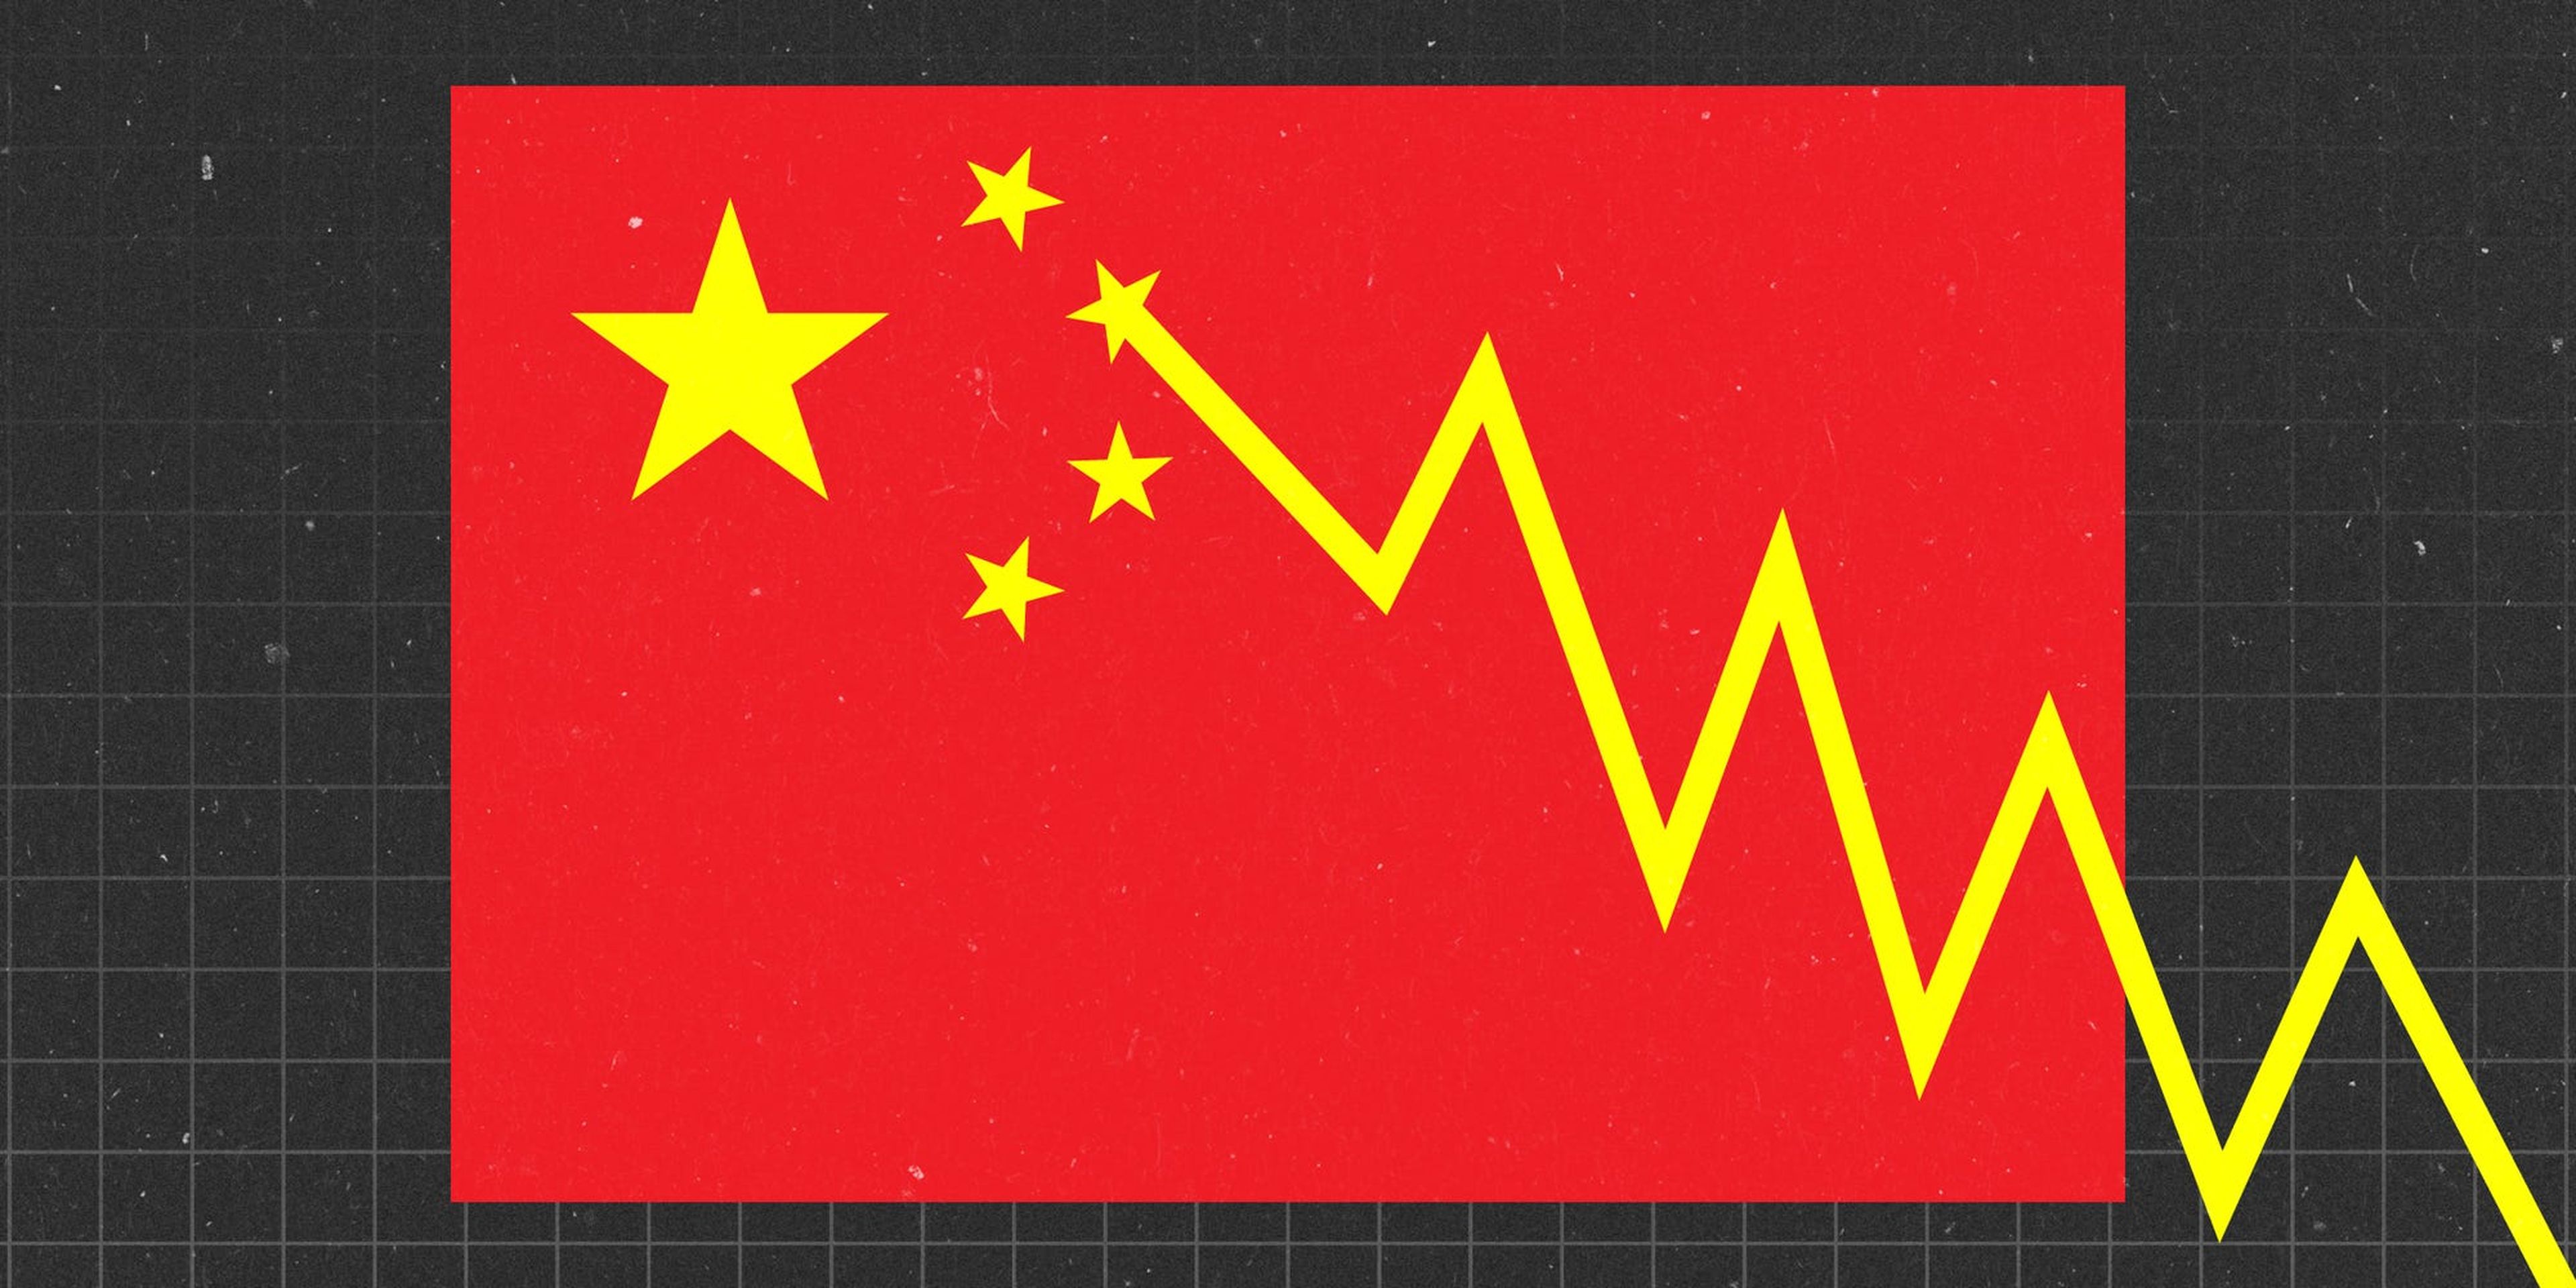 Los inversores deben tener cuidado: el mercado de 2 billones de dólares para las acciones chinas se basa en una base inestable de libros no auditados y empresas fantasma dudosas.